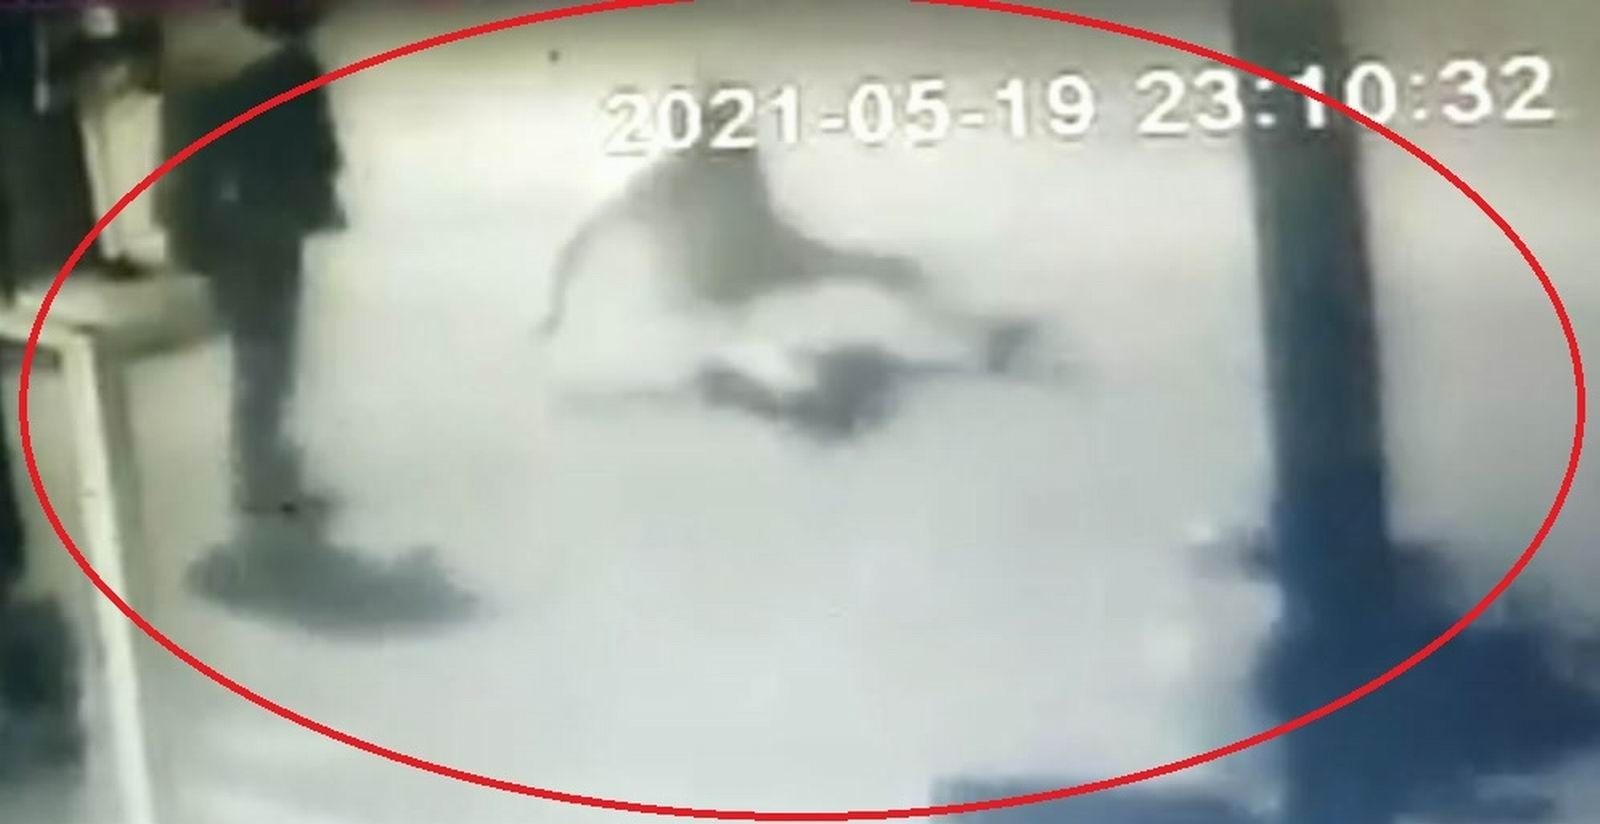 Samsun'daki 2 kişinin öldüğü silahlı kavganın güvenlik kamerası görüntüsü ortaya çıktı
